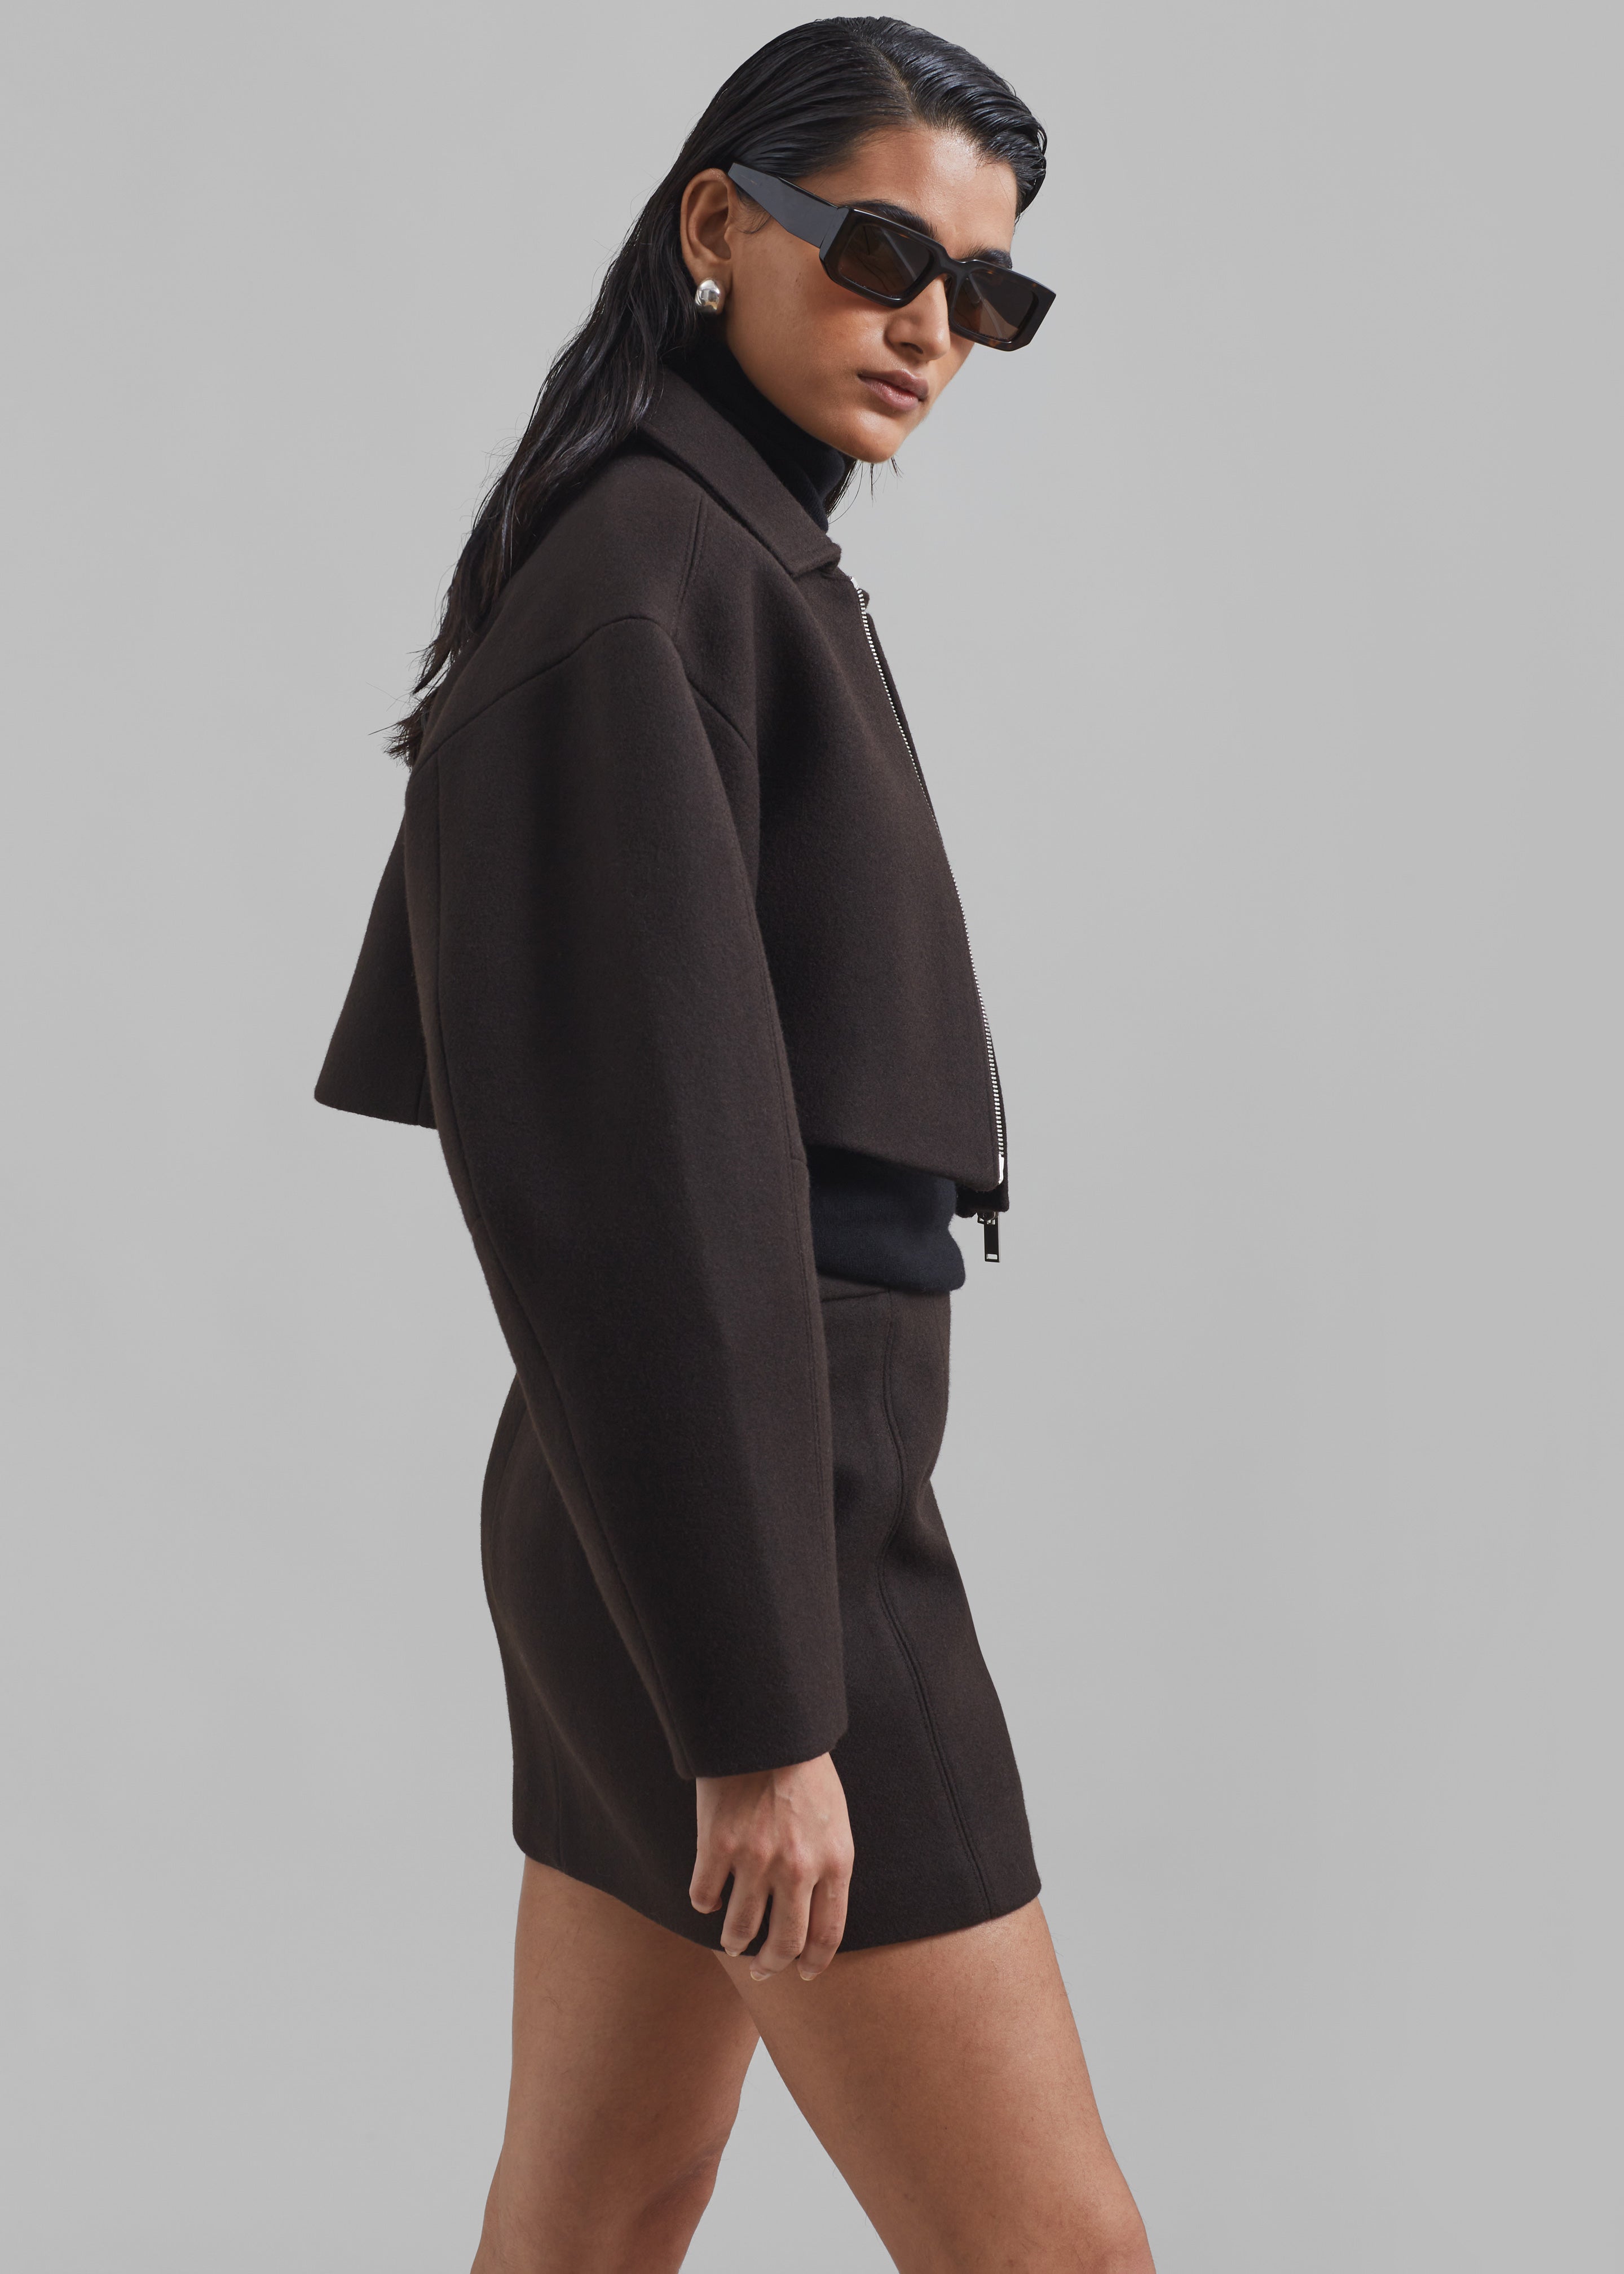 Kerrigan Wool Mini Skirt - Brown - 8